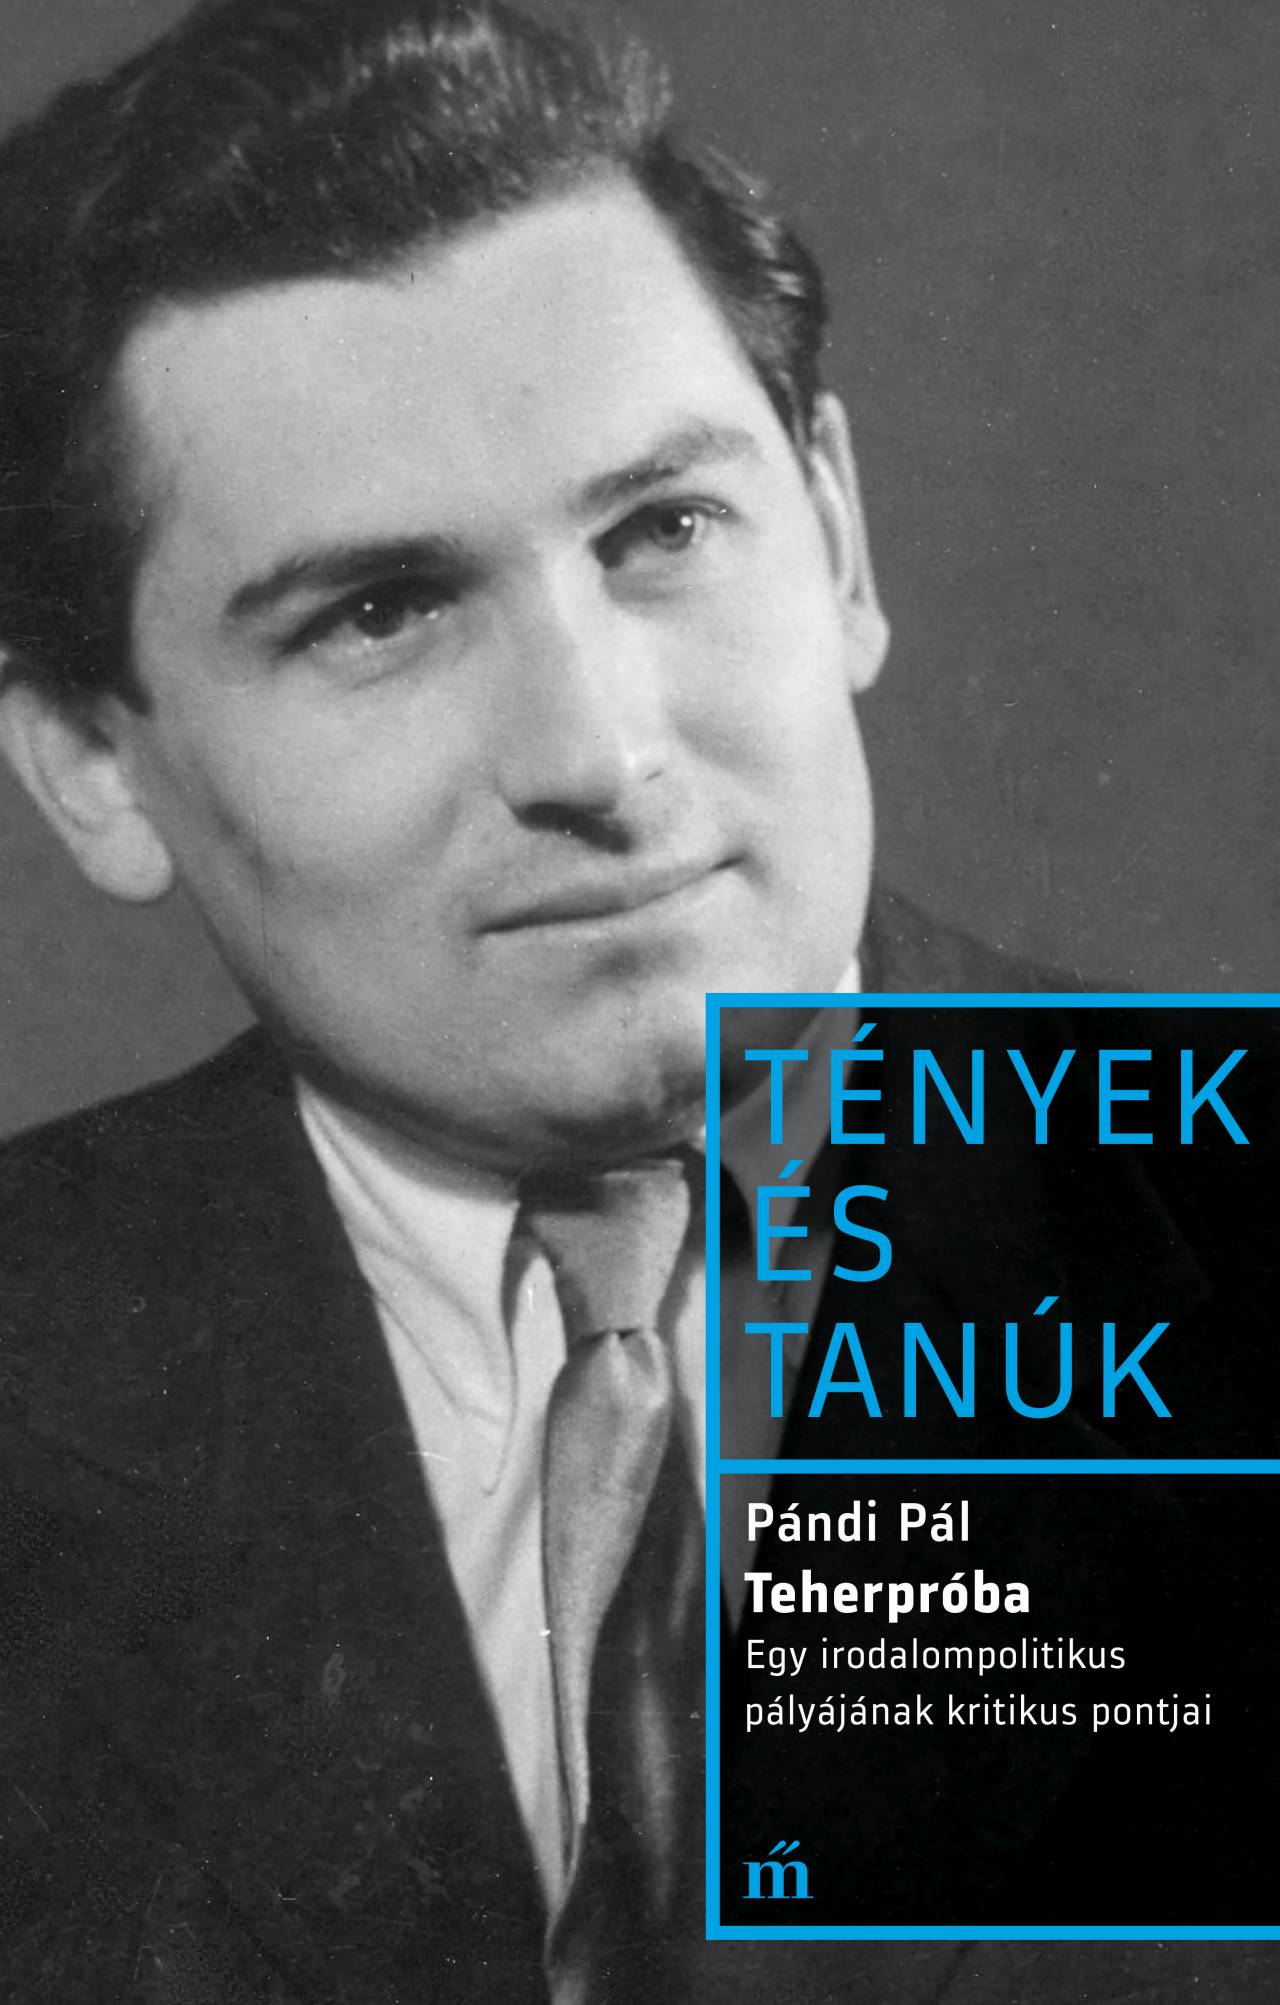 Pándi Pál - Teherpróba - Egy irodalompolitikus pályájának kritikus pontjai